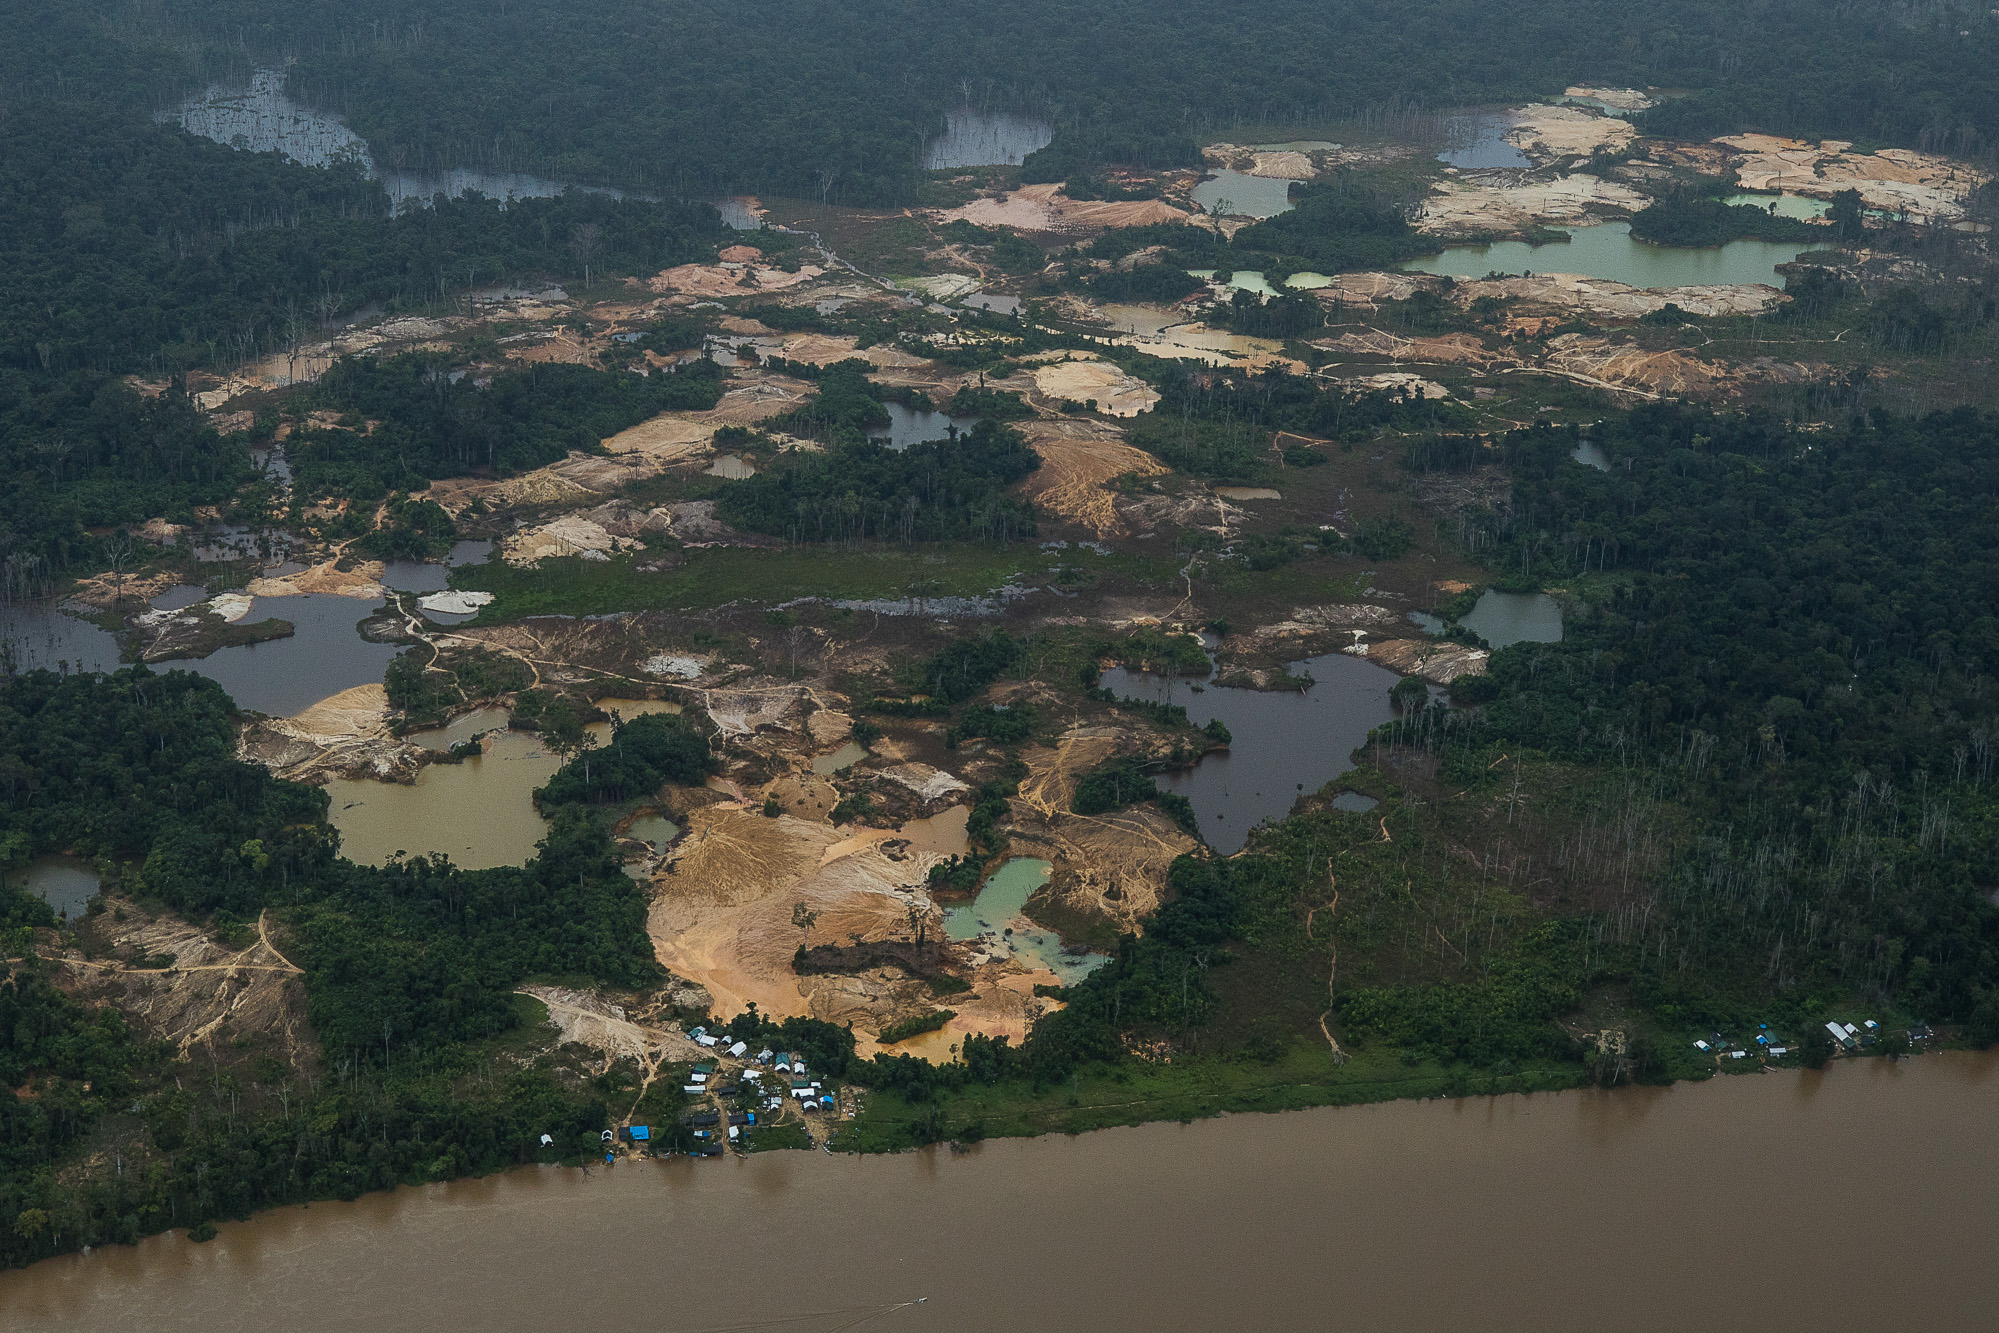 Planalto recruta Minas e Energia para superar defesa do garimpo. Na imagem: visão aérea de terra indígena Yanomami na Amazônia sob ameaça da mineração empresarial ilegal (Foto: Amazônia Real)